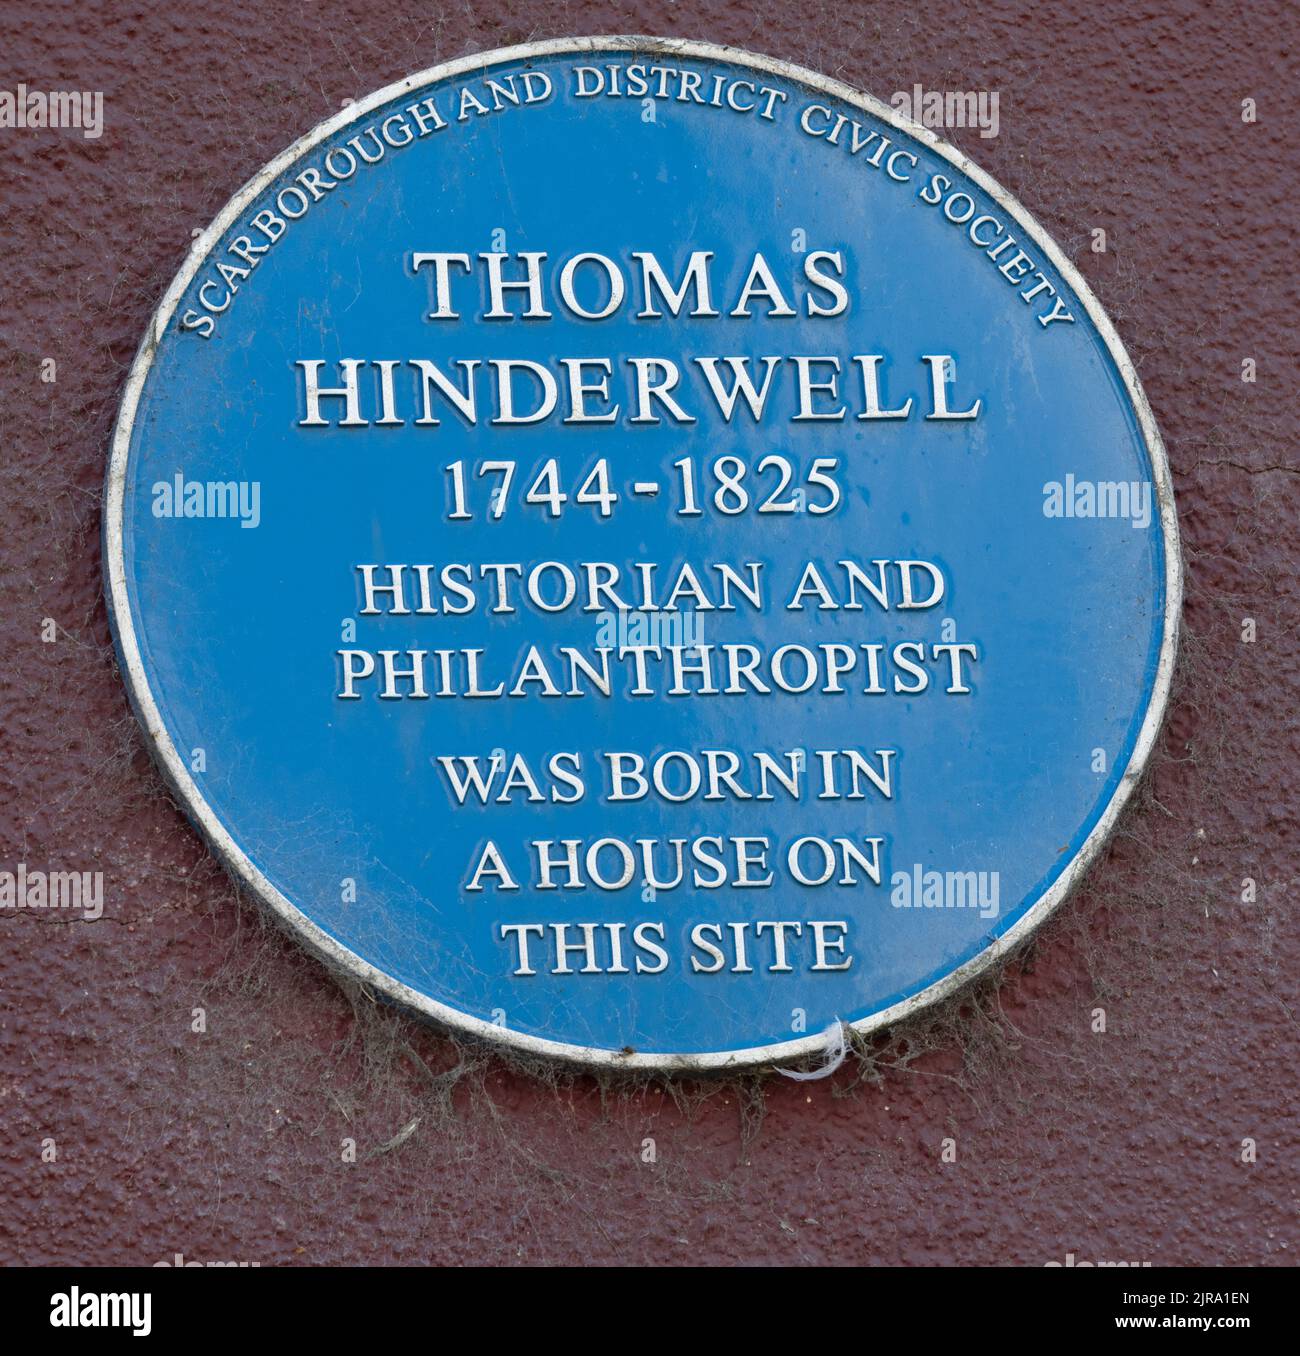 Plaque du patrimoine bleu de la Scarborough and District Civic Society pour Thomas Hinderwell 1744 - 1825 historien et philanthrope, Scarborough, Royaume-Uni Banque D'Images